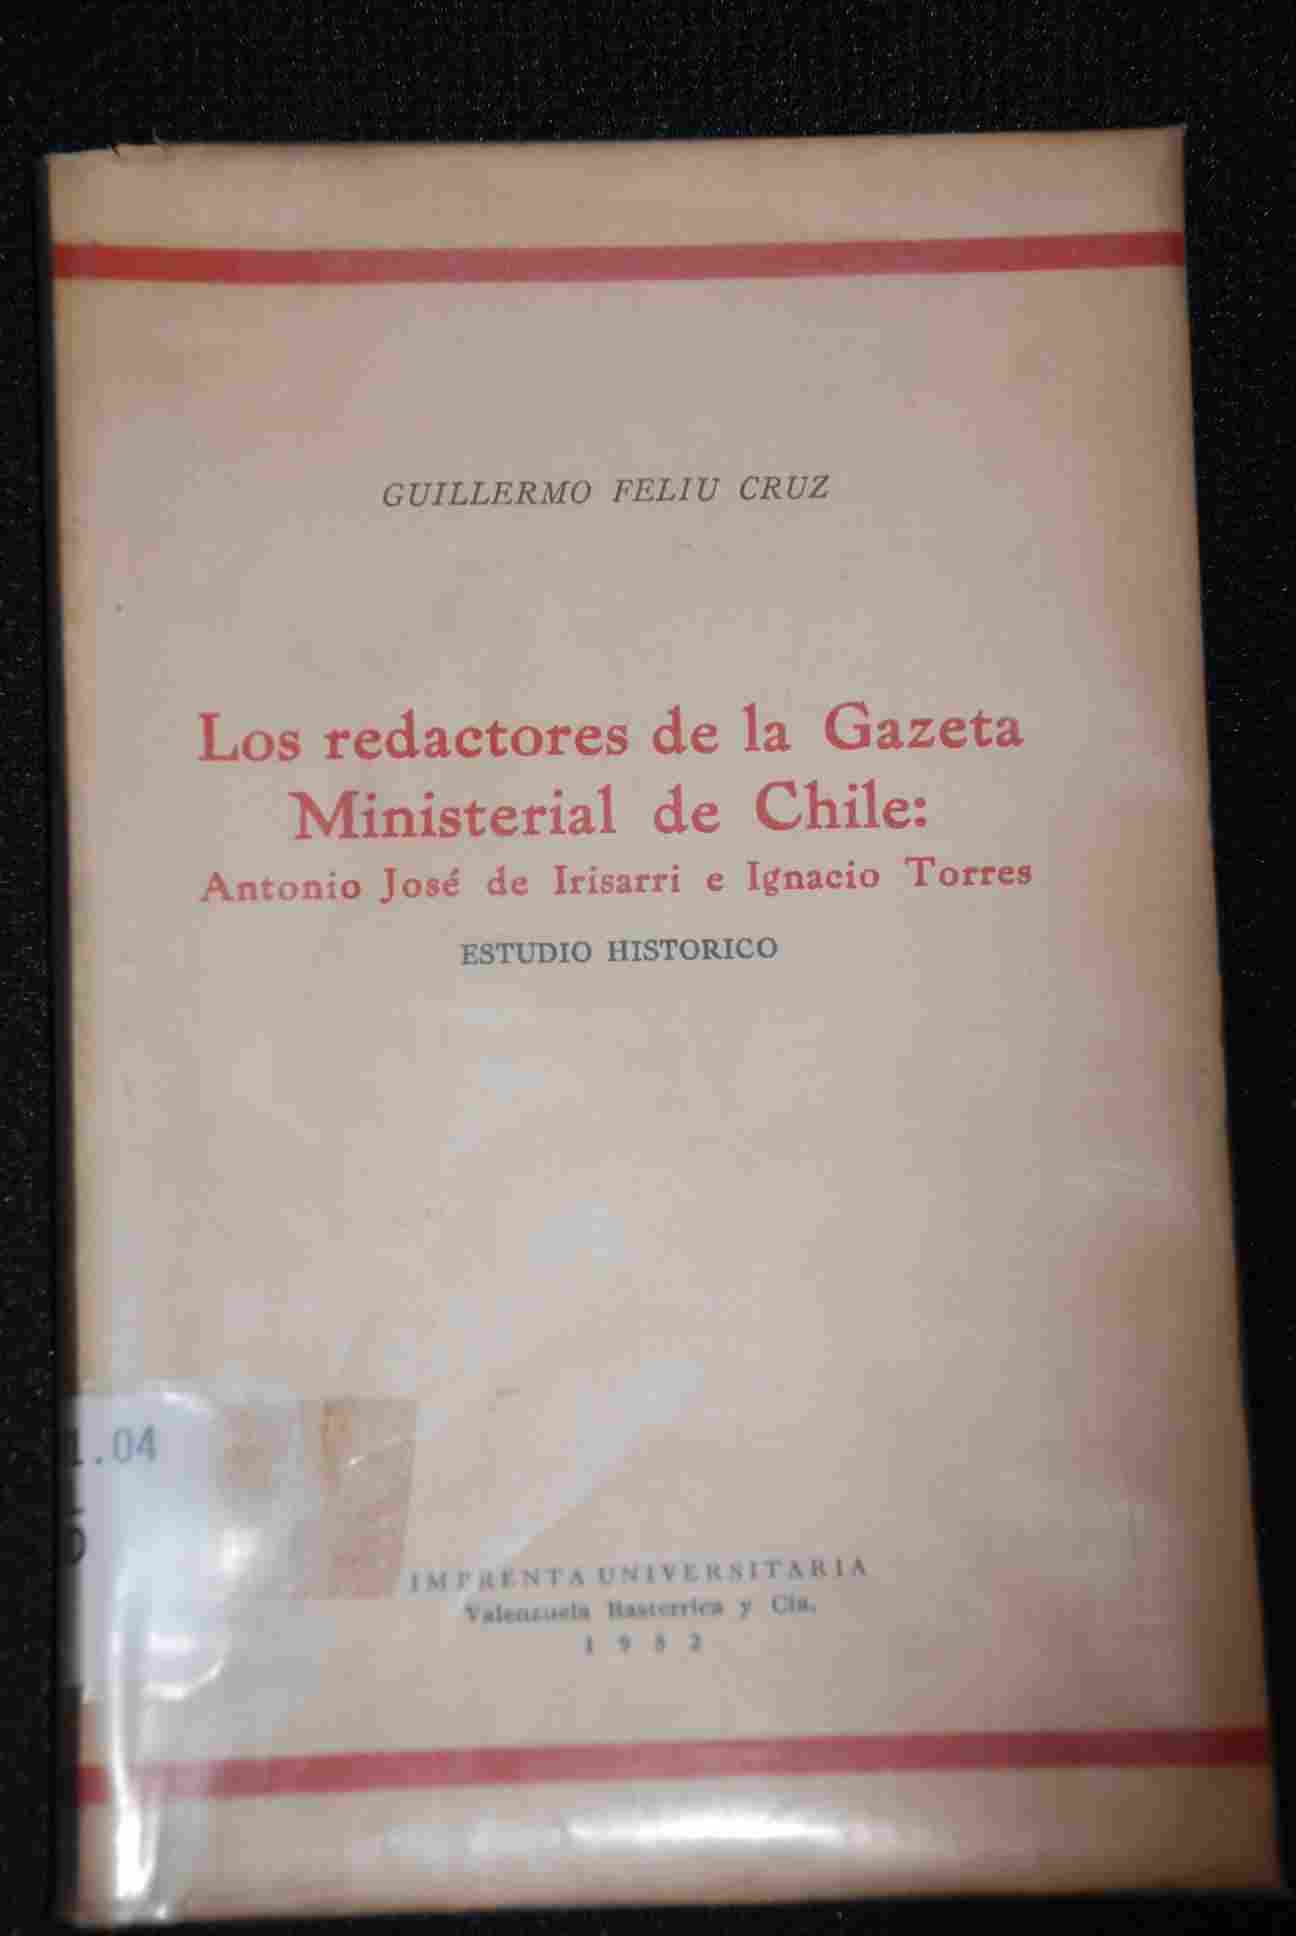 Guillermo Feliu Cruz  - Los redactores de la Gazeta Ministerial de Chile : Antonio José de Irisarri e Ignacio Torres : estudio histórico.